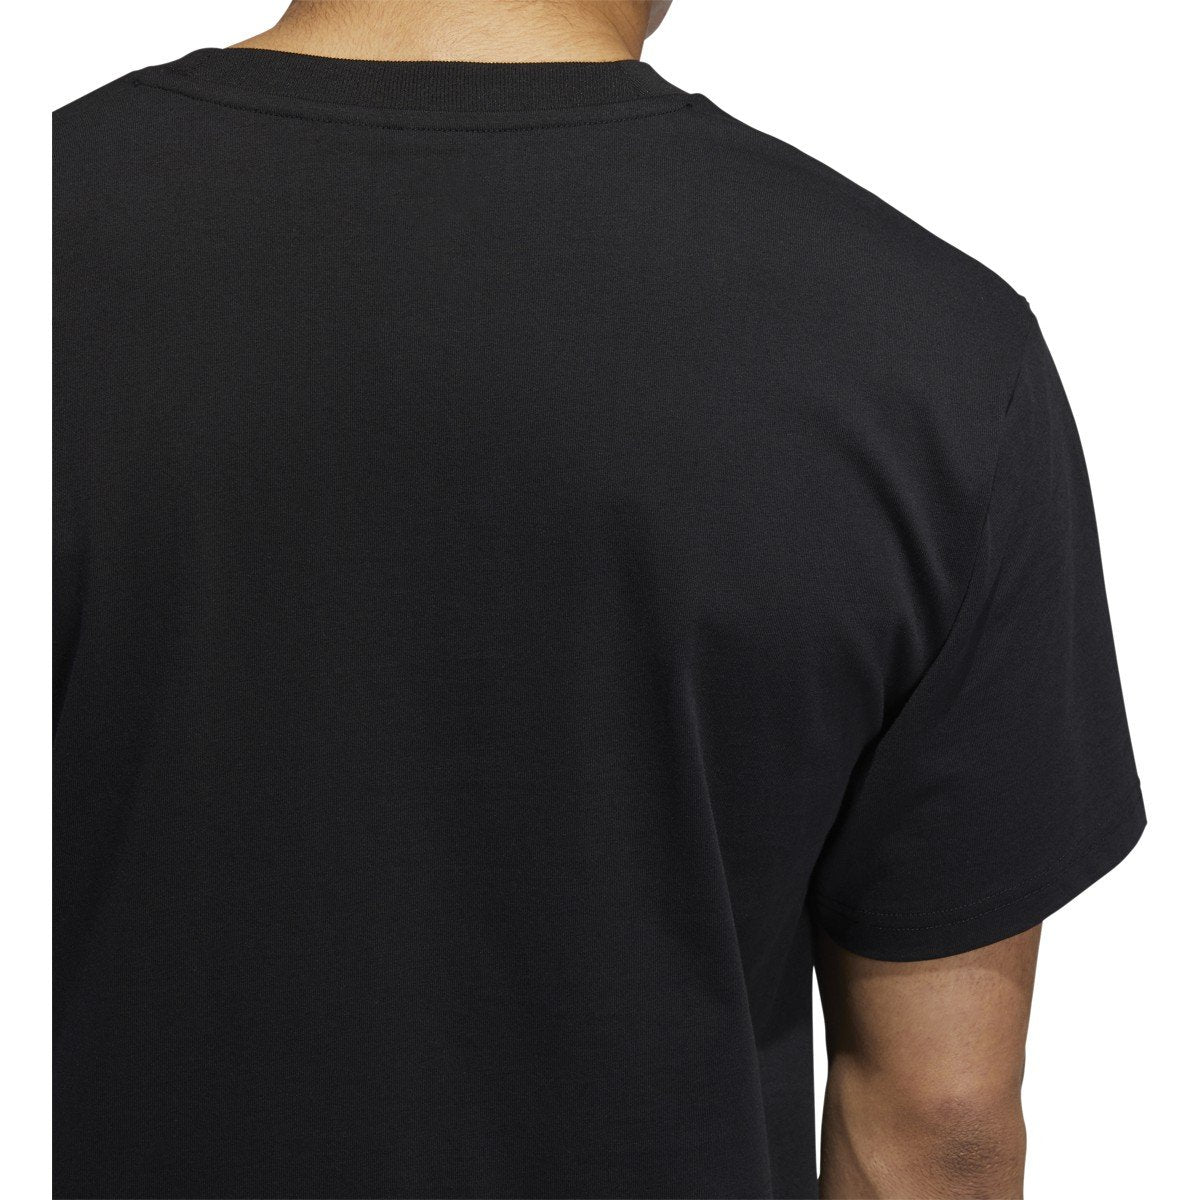 adidas-mens-solid-bb-t-shirt-ec7364